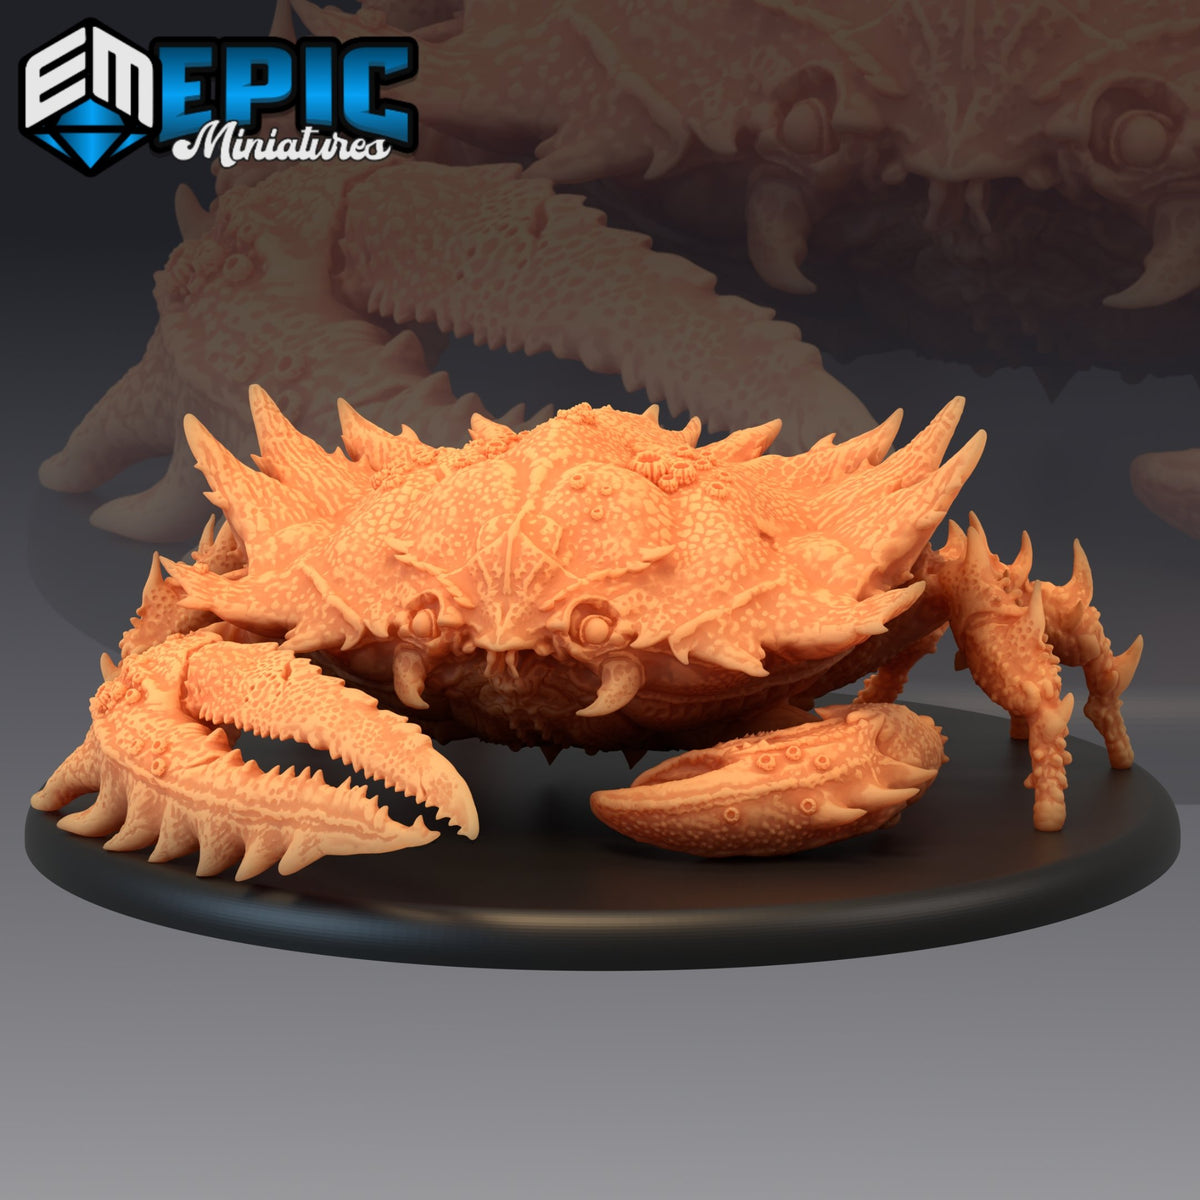 Giant Crab - The Printable Dragon